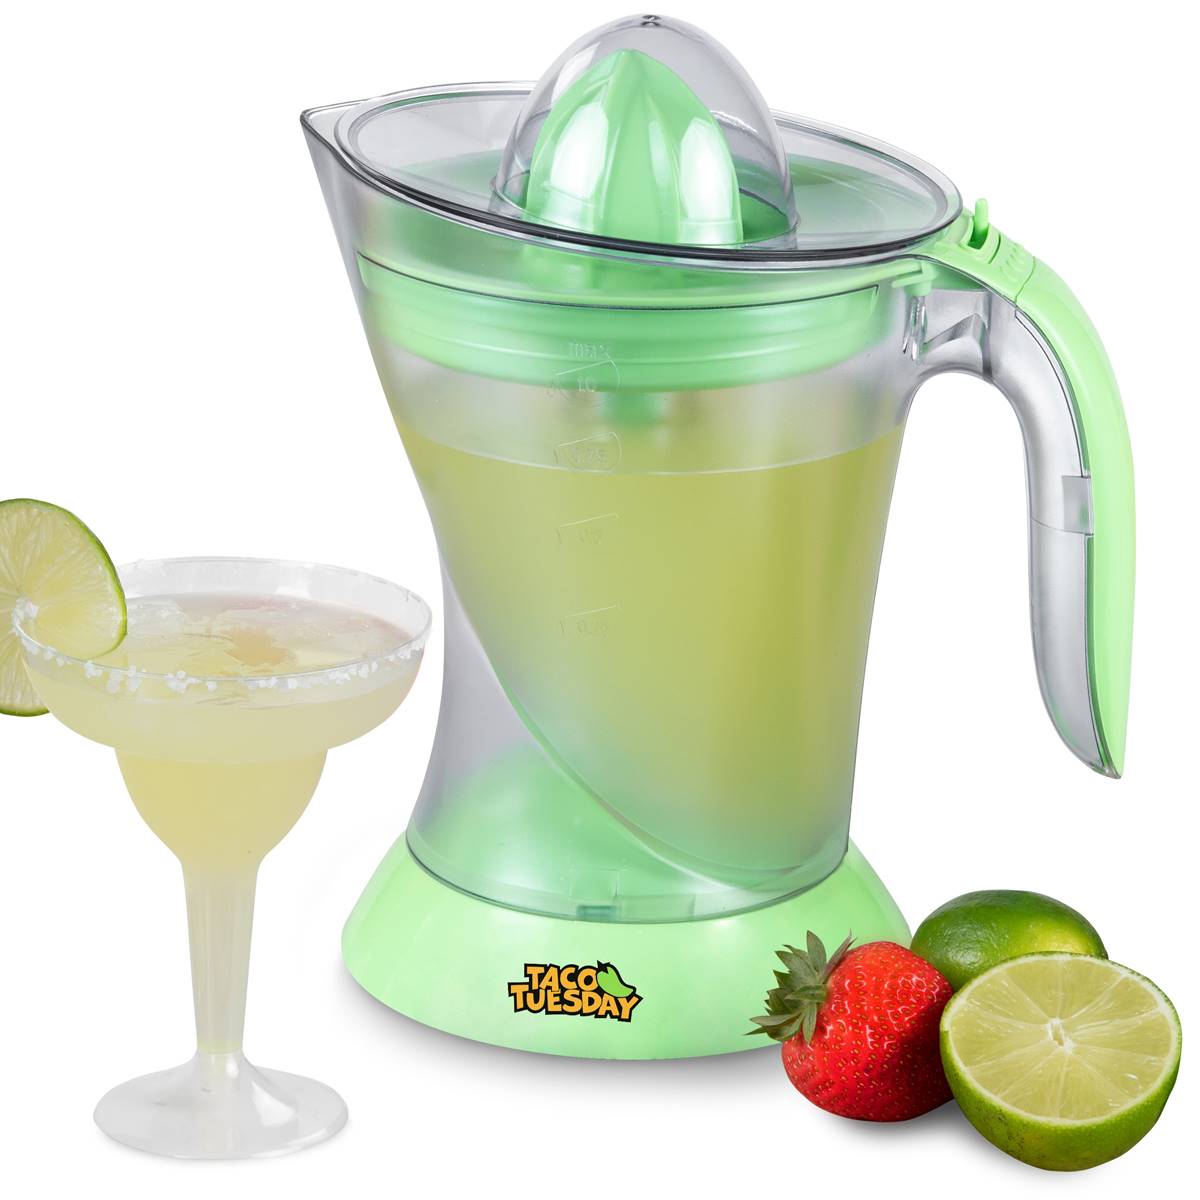 Nostalgia(tm) Taco Tuesday Electric Lime Juicer & Margarita Kit